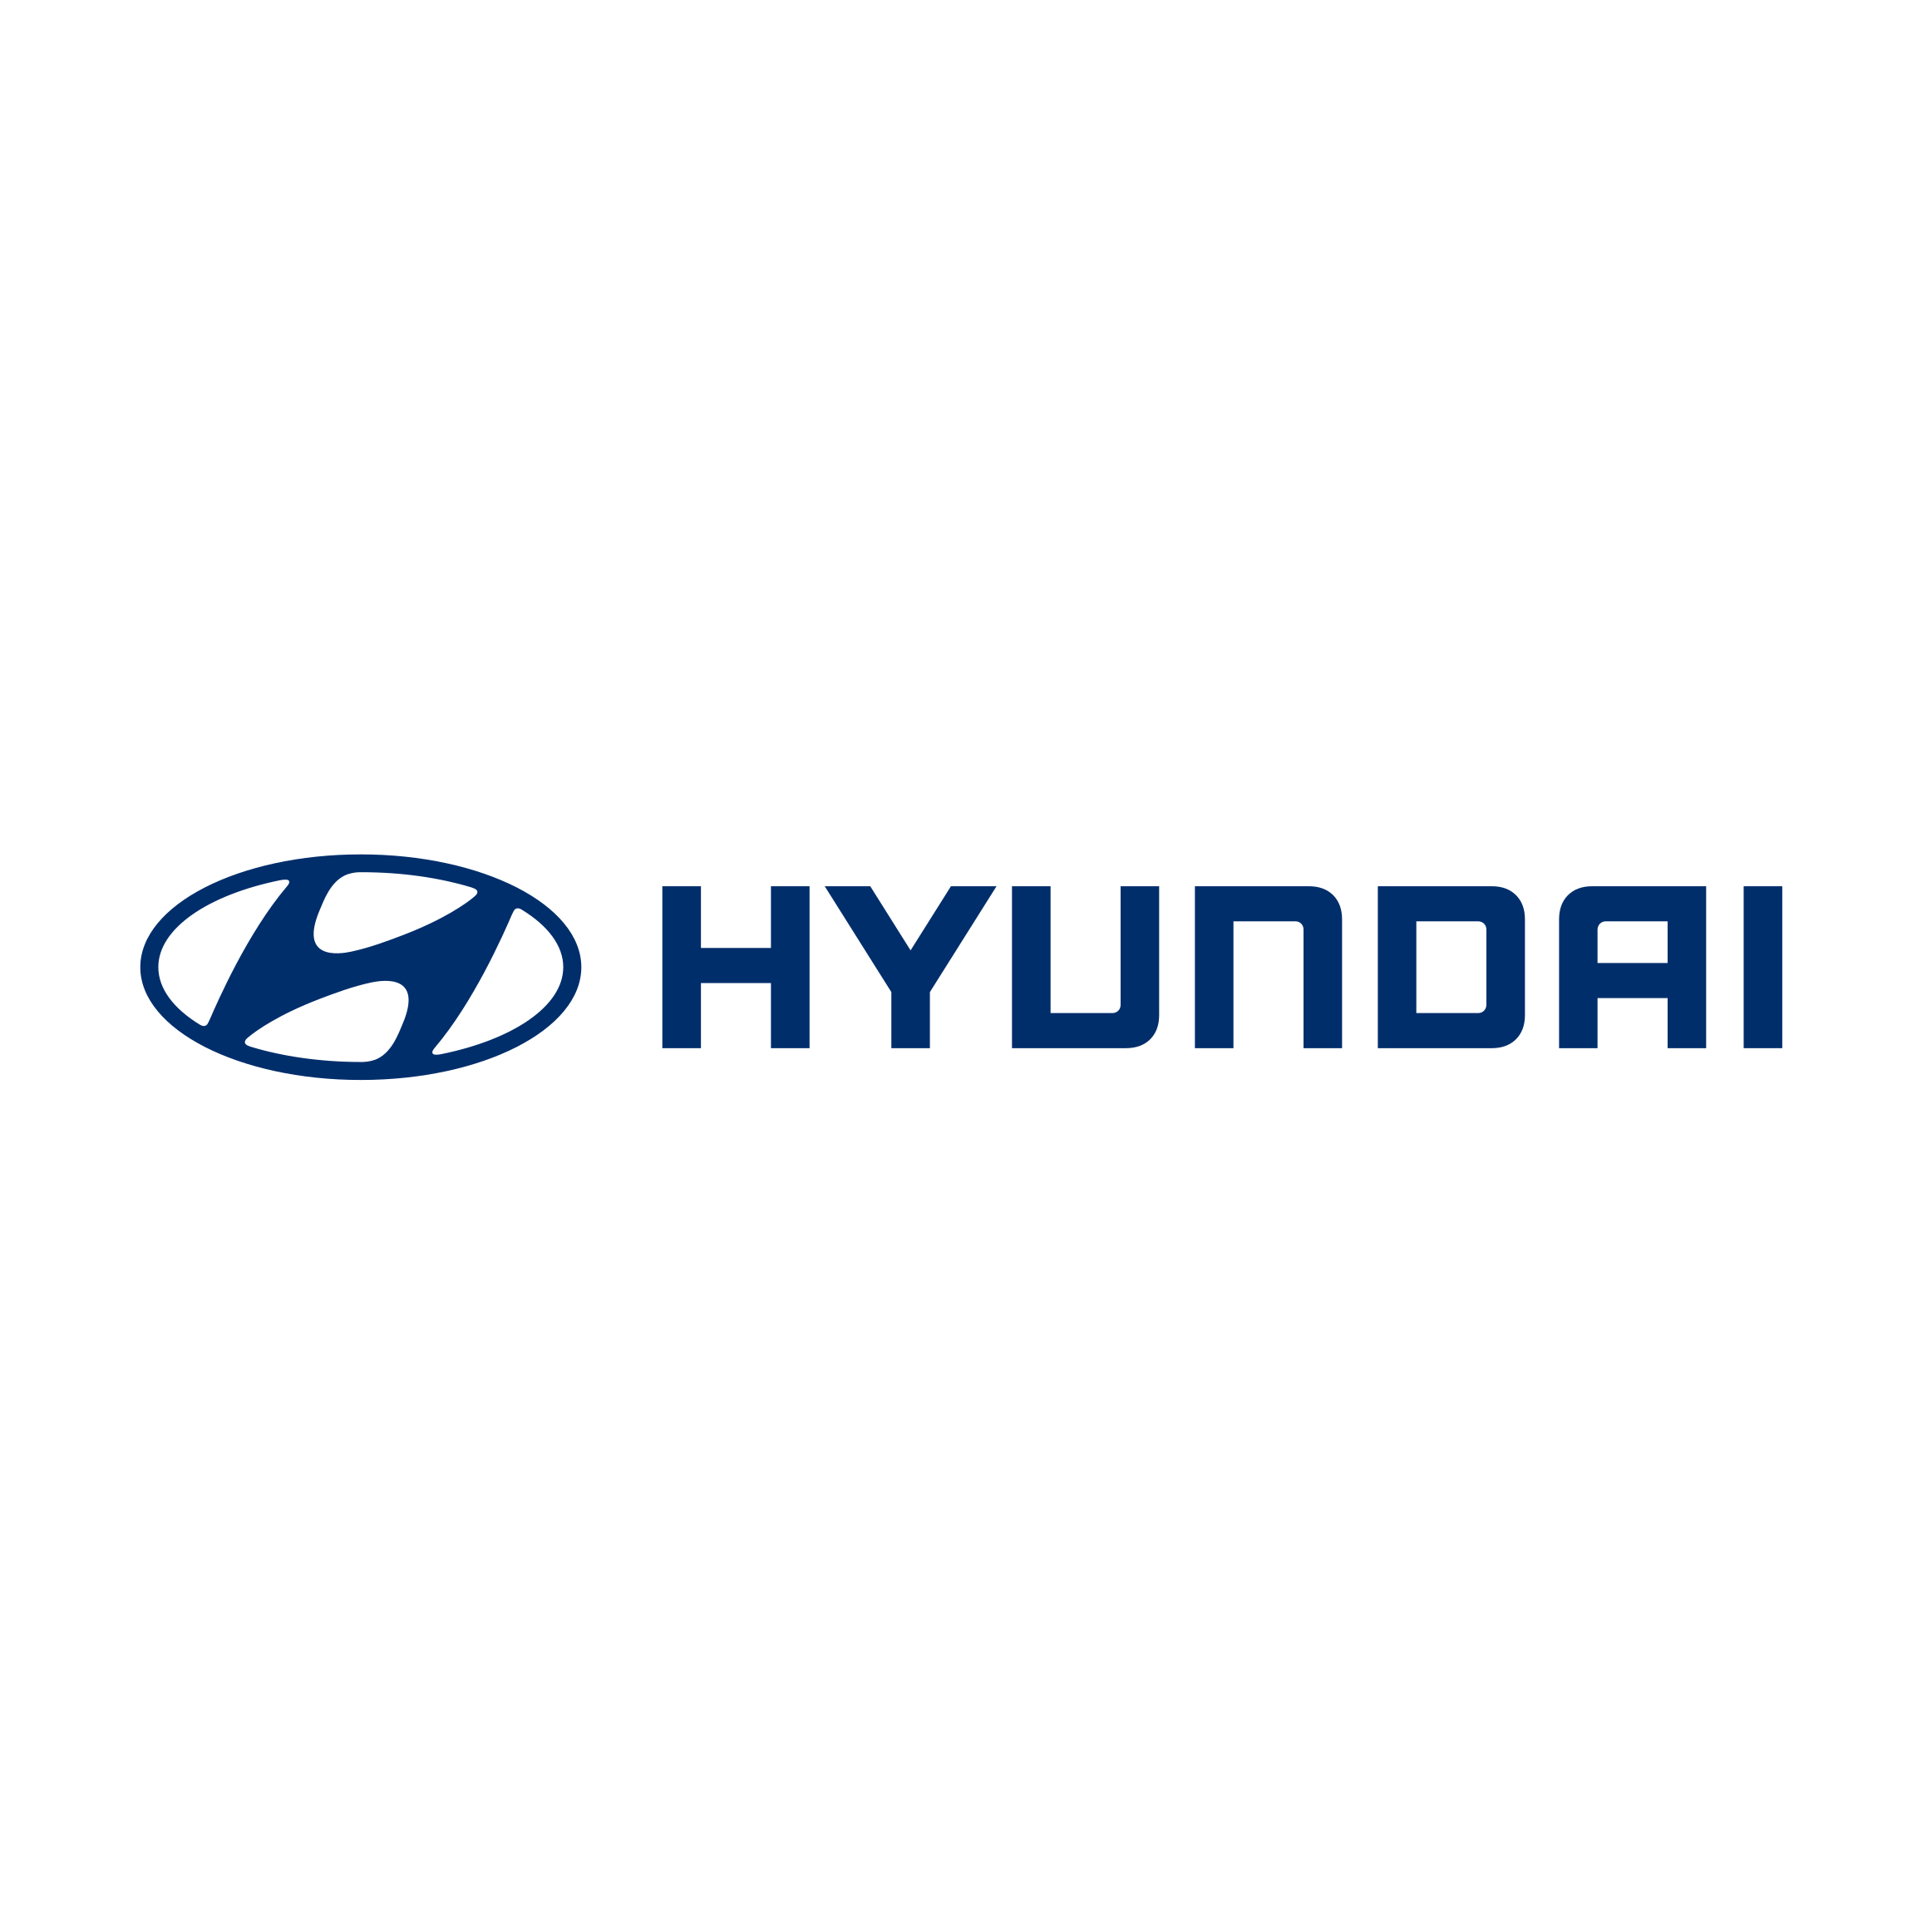 Hyundai - sprrawdź wszystkie promocje